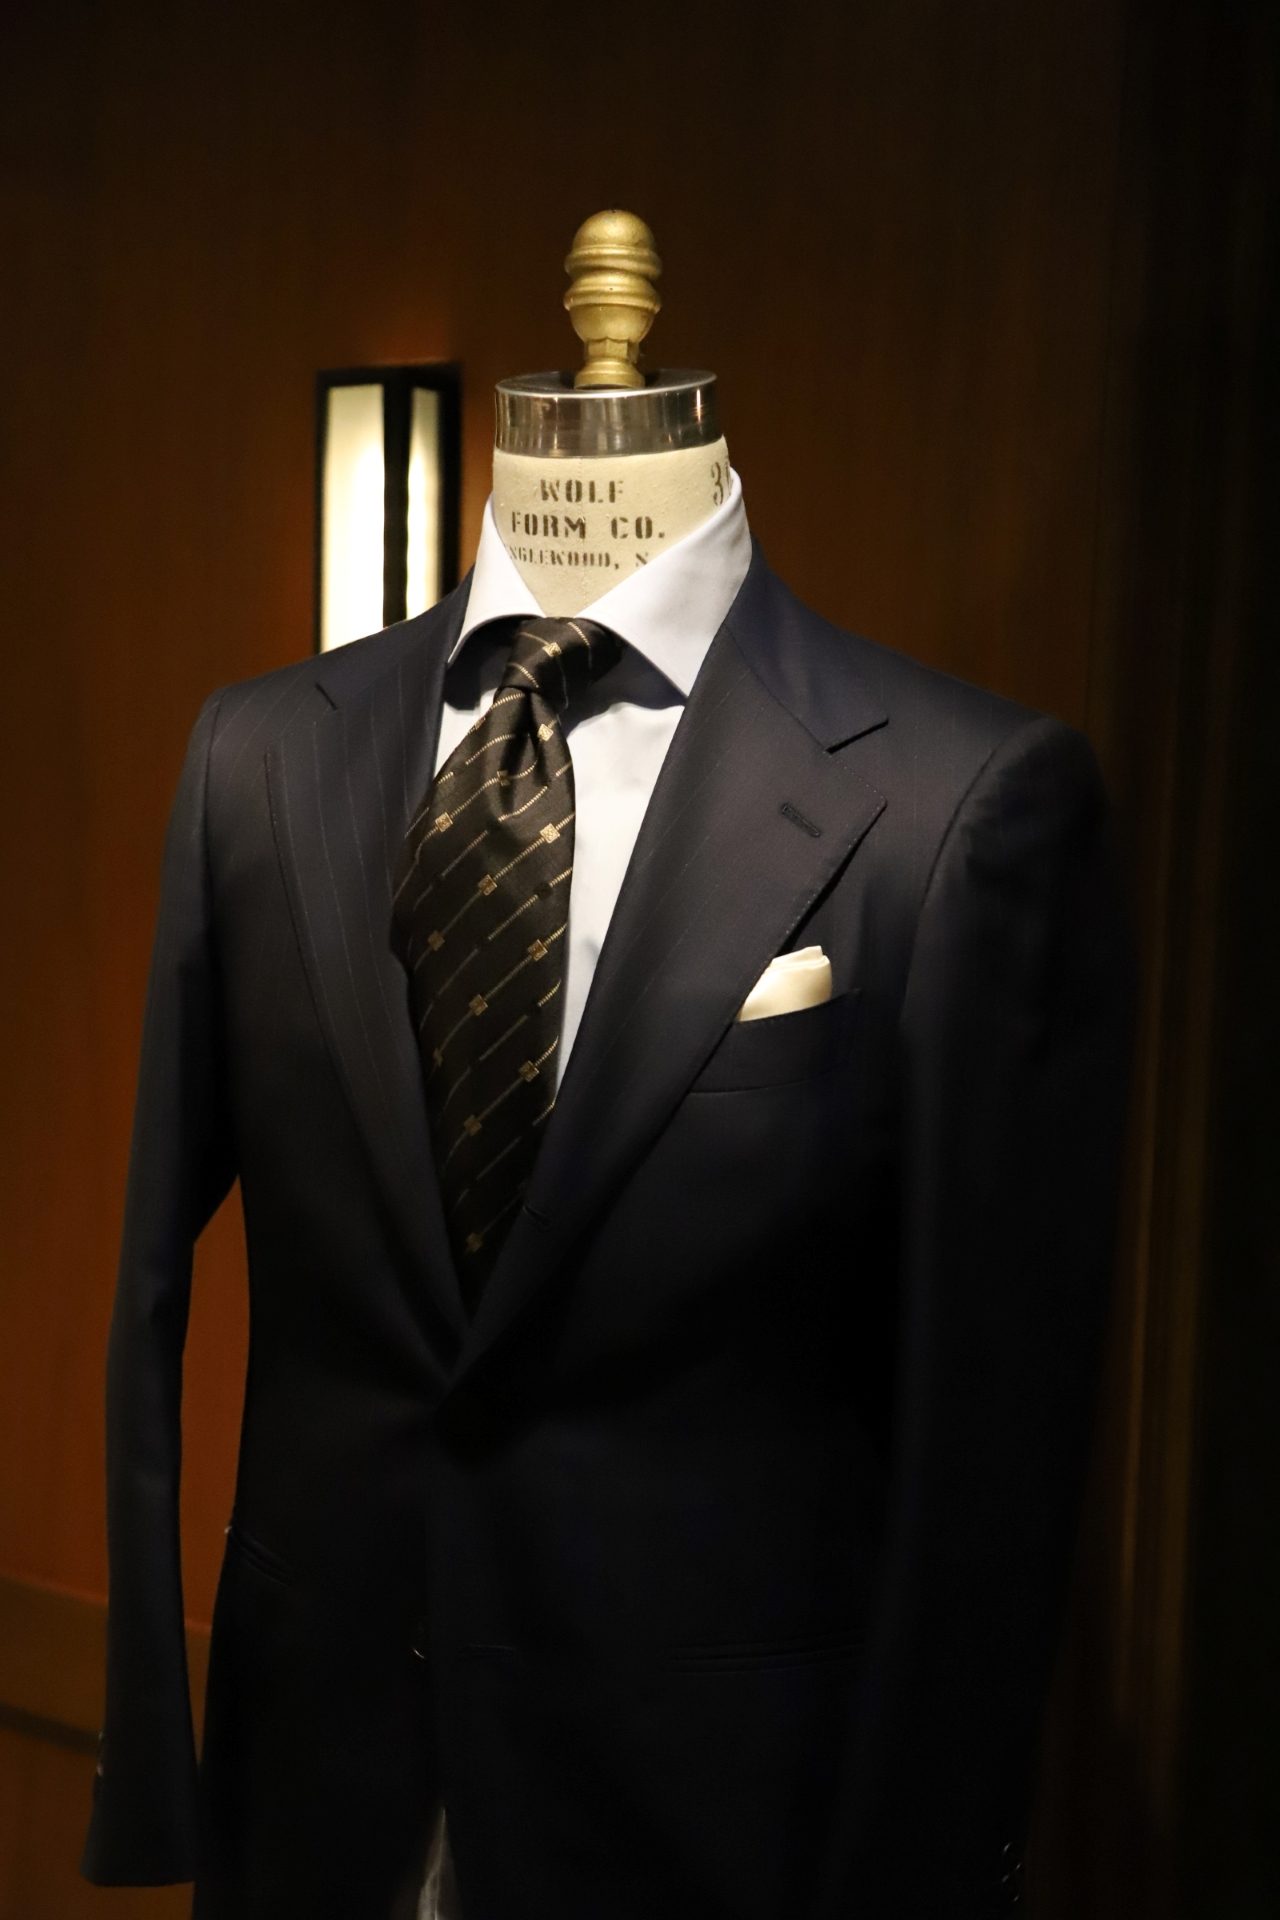 ボリエッロ（BORRIELLO）のネイビーのオーダーシャツとネイビーのオーダースーツ、アット ヴァンヌッチAtto Vannucci）のネクタイを合わせたコーディネートです。スーツはTHE G'S HIDEOUT.オリジナルの1着です。